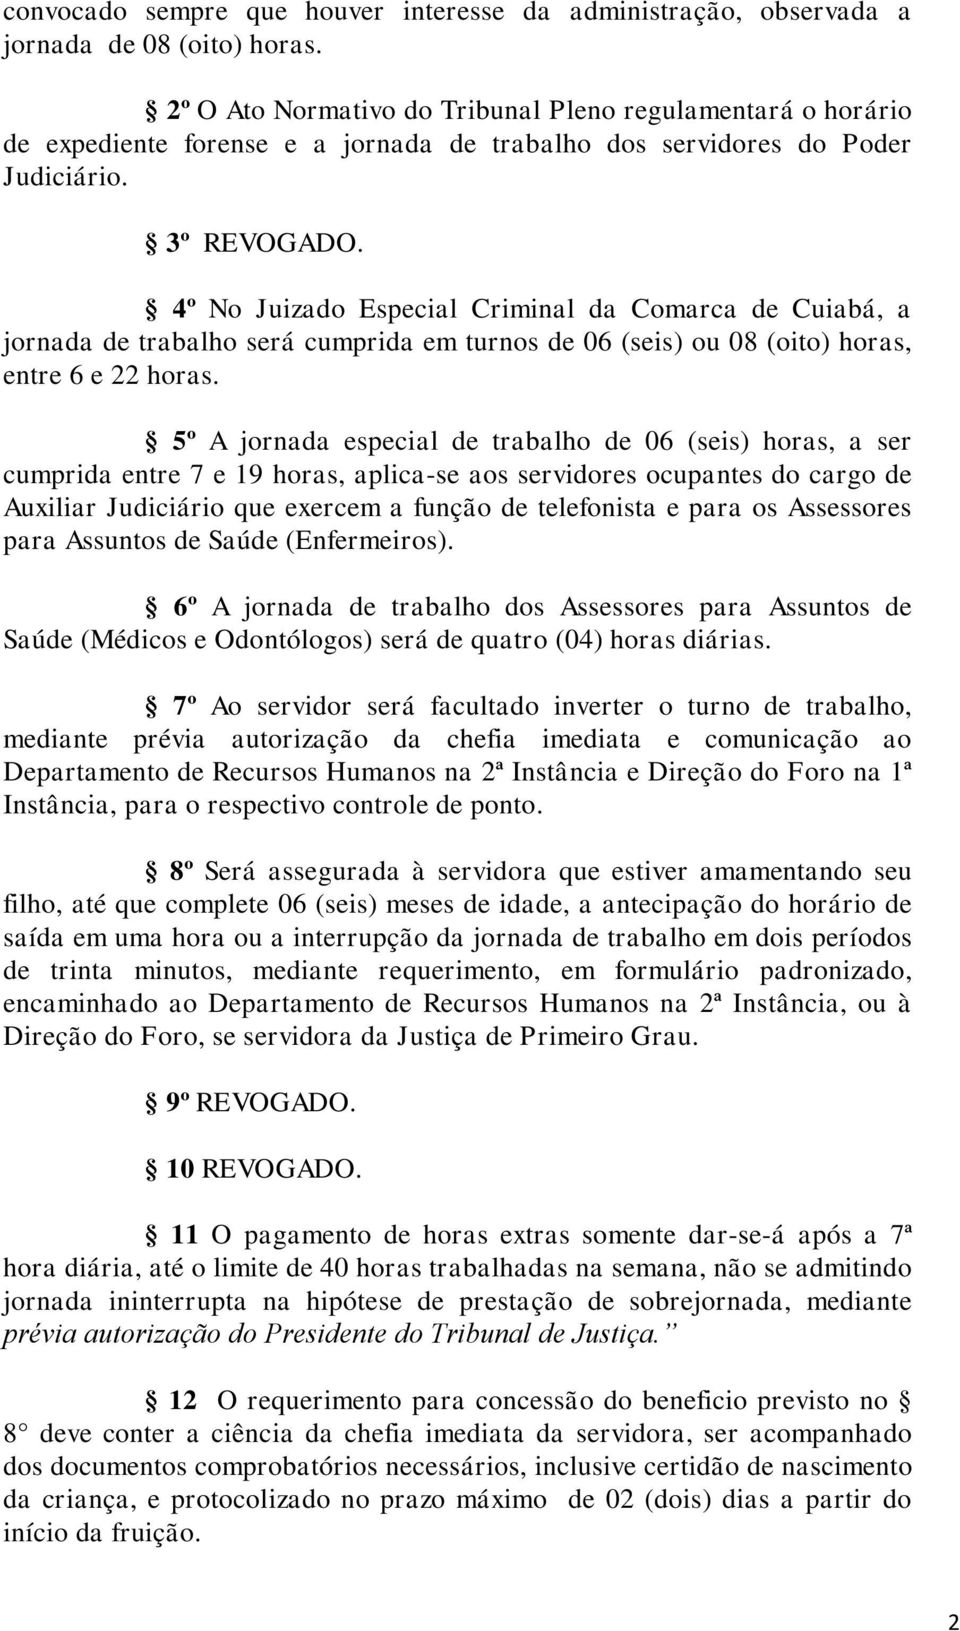 4º No Juizado Especial Criminal da Comarca de Cuiabá, a jornada de trabalho será cumprida em turnos de 06 (seis) ou 08 (oito) horas, entre 6 e 22 horas.